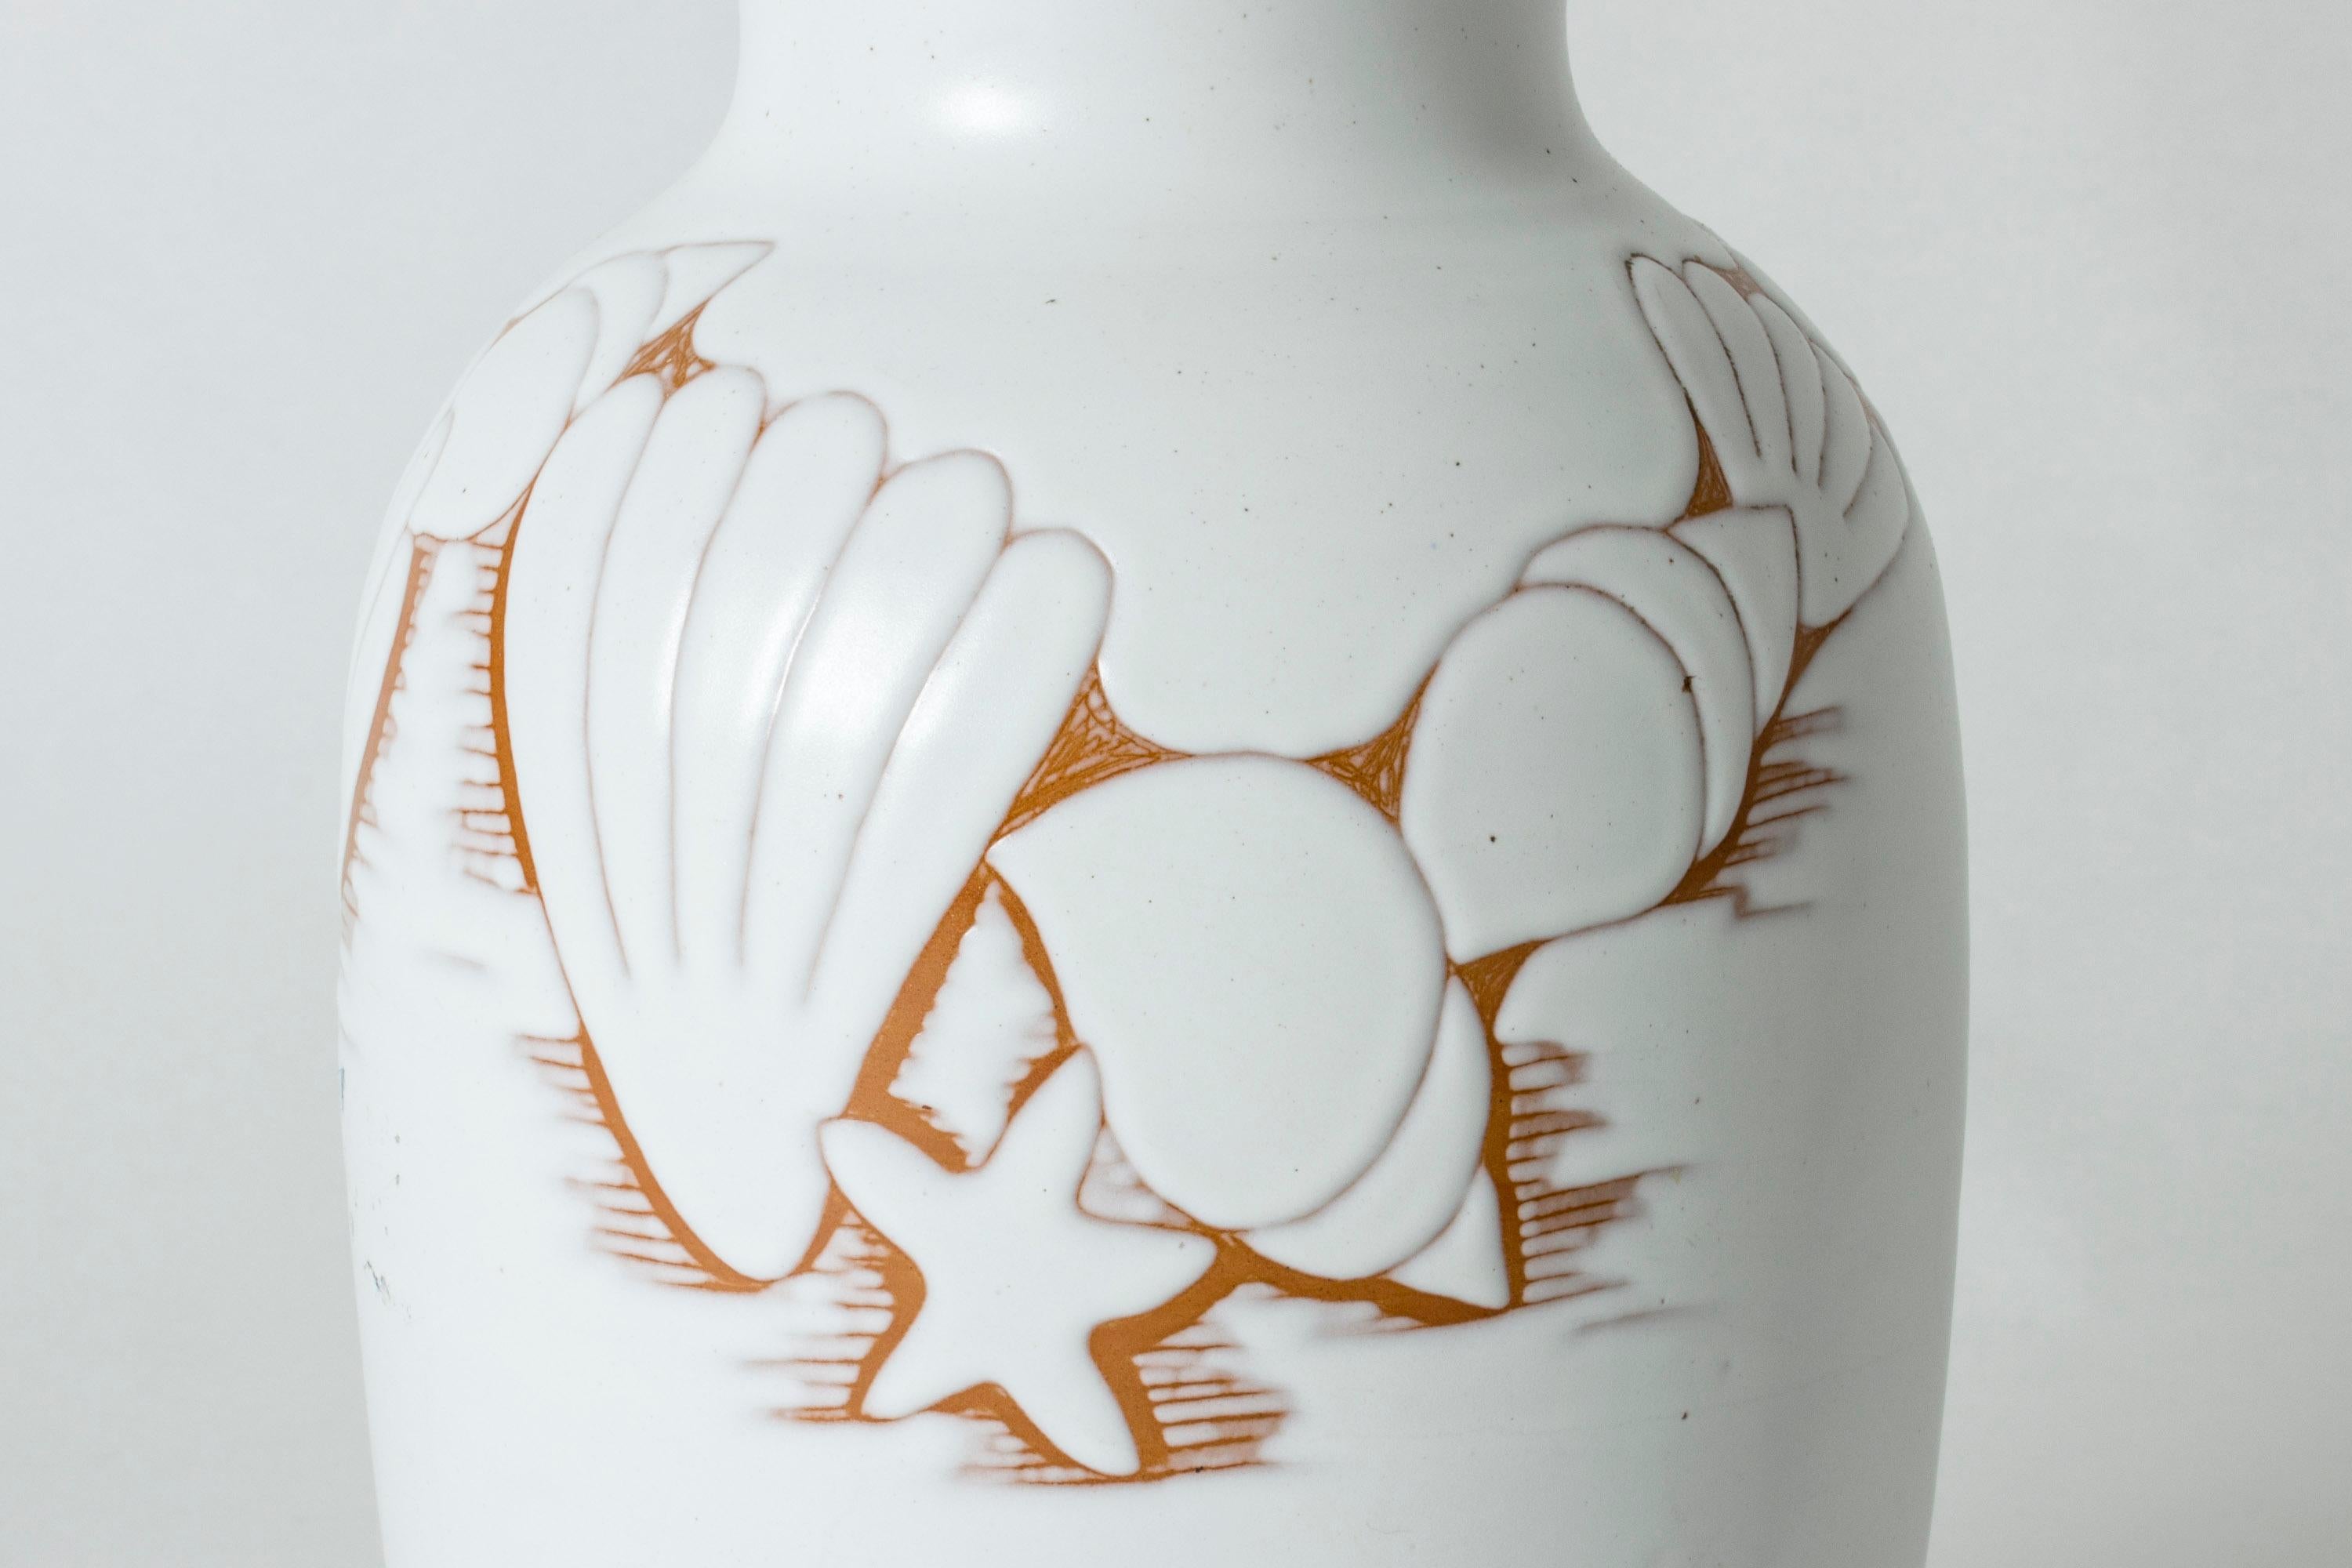 Large Swedish ceramic earthenware vase by Anna-Lisa Thomson for Upsala-Ekeby 1